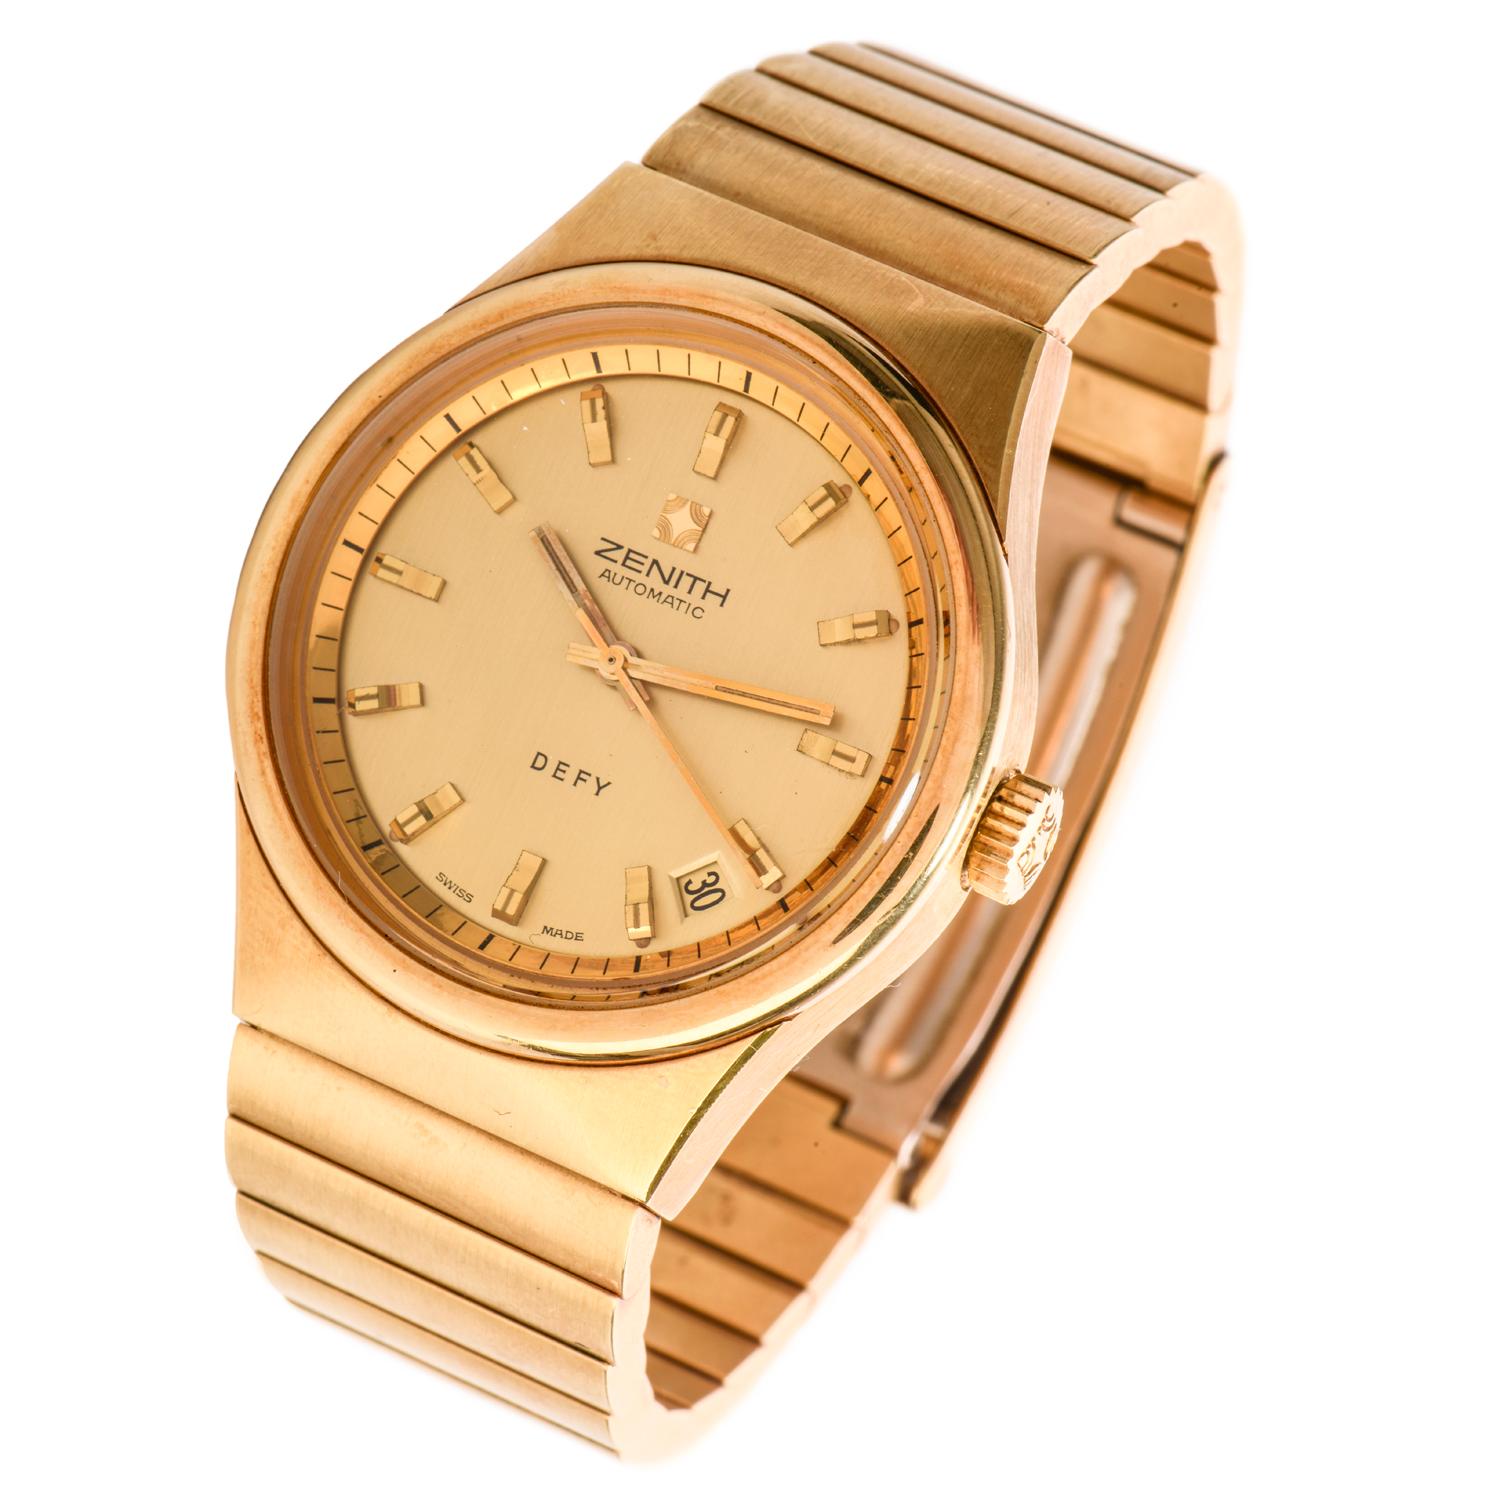 zenith gold watch price